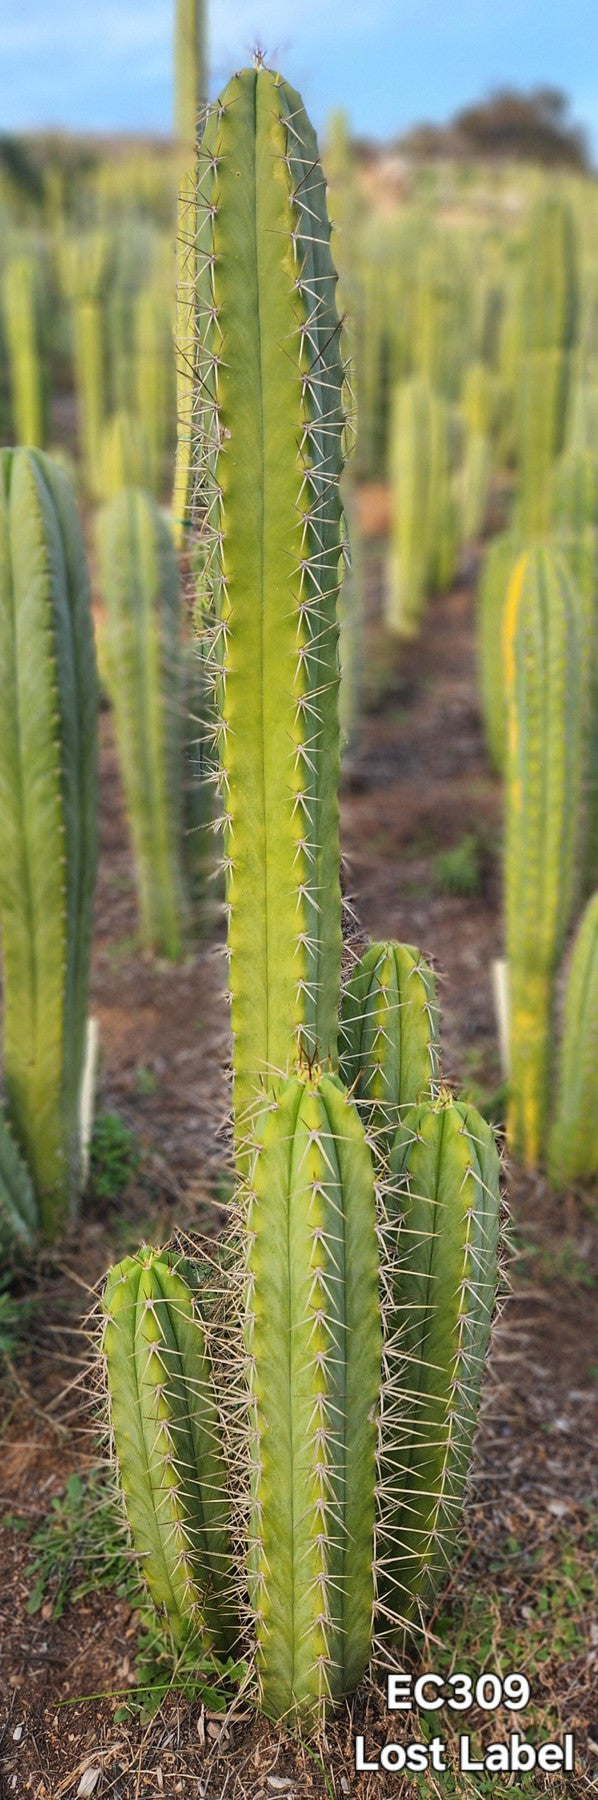 #EC309 EXACT Trichocereus Lost Label Cactus Cutting 7-8"